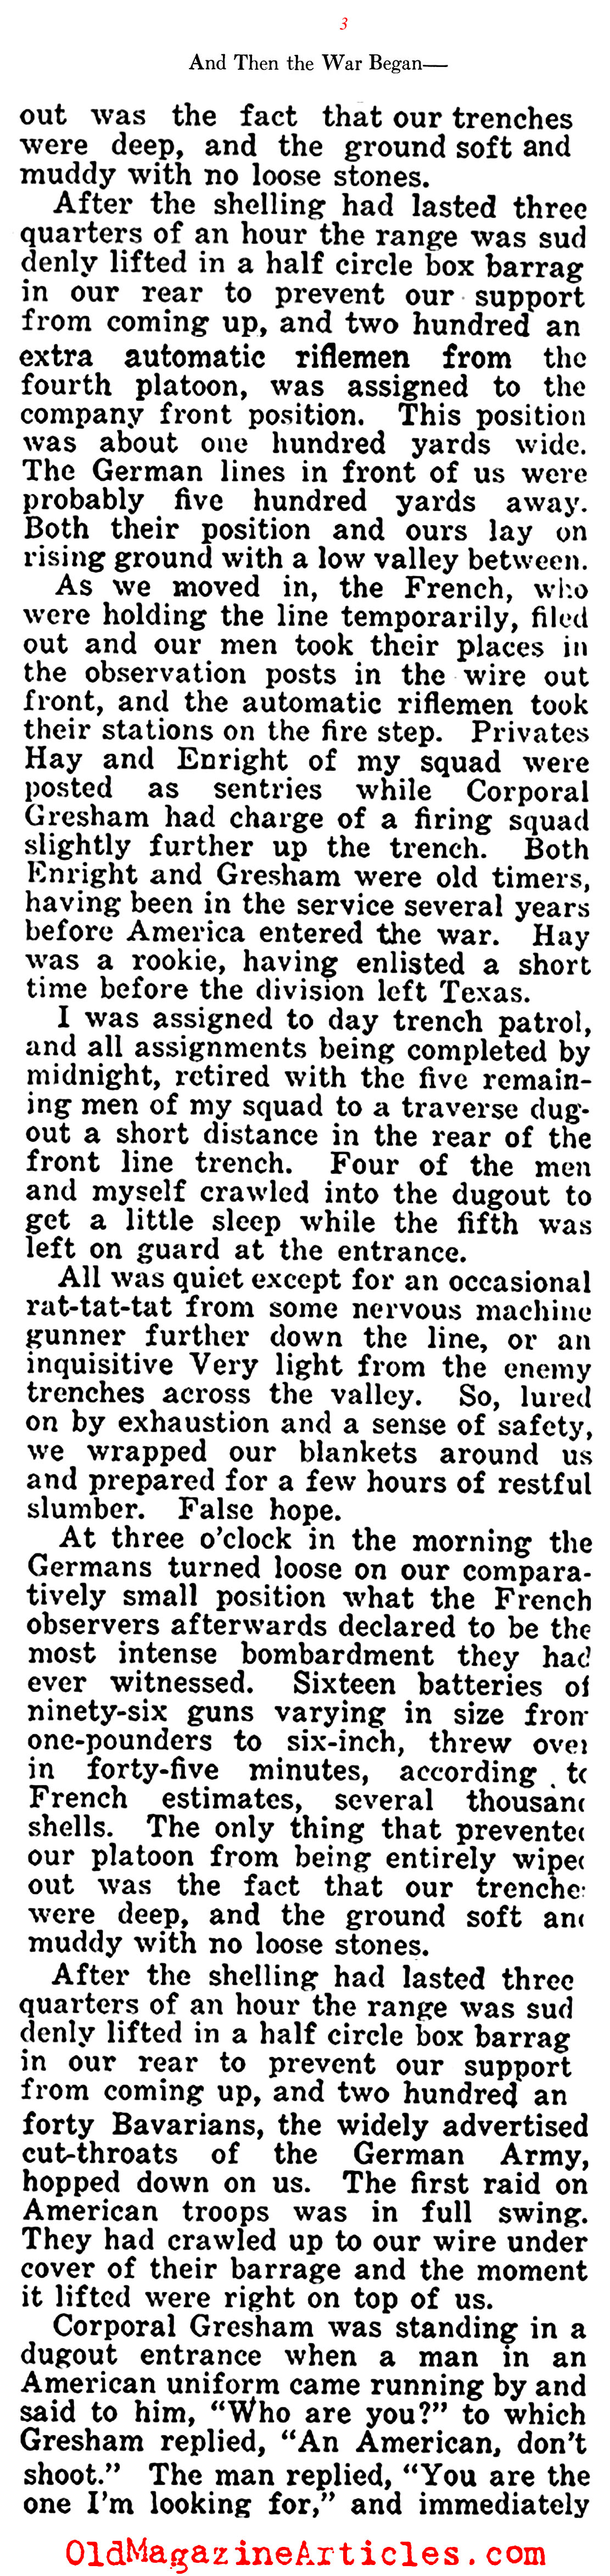 First Blood (American Legion Weekly, 1922)